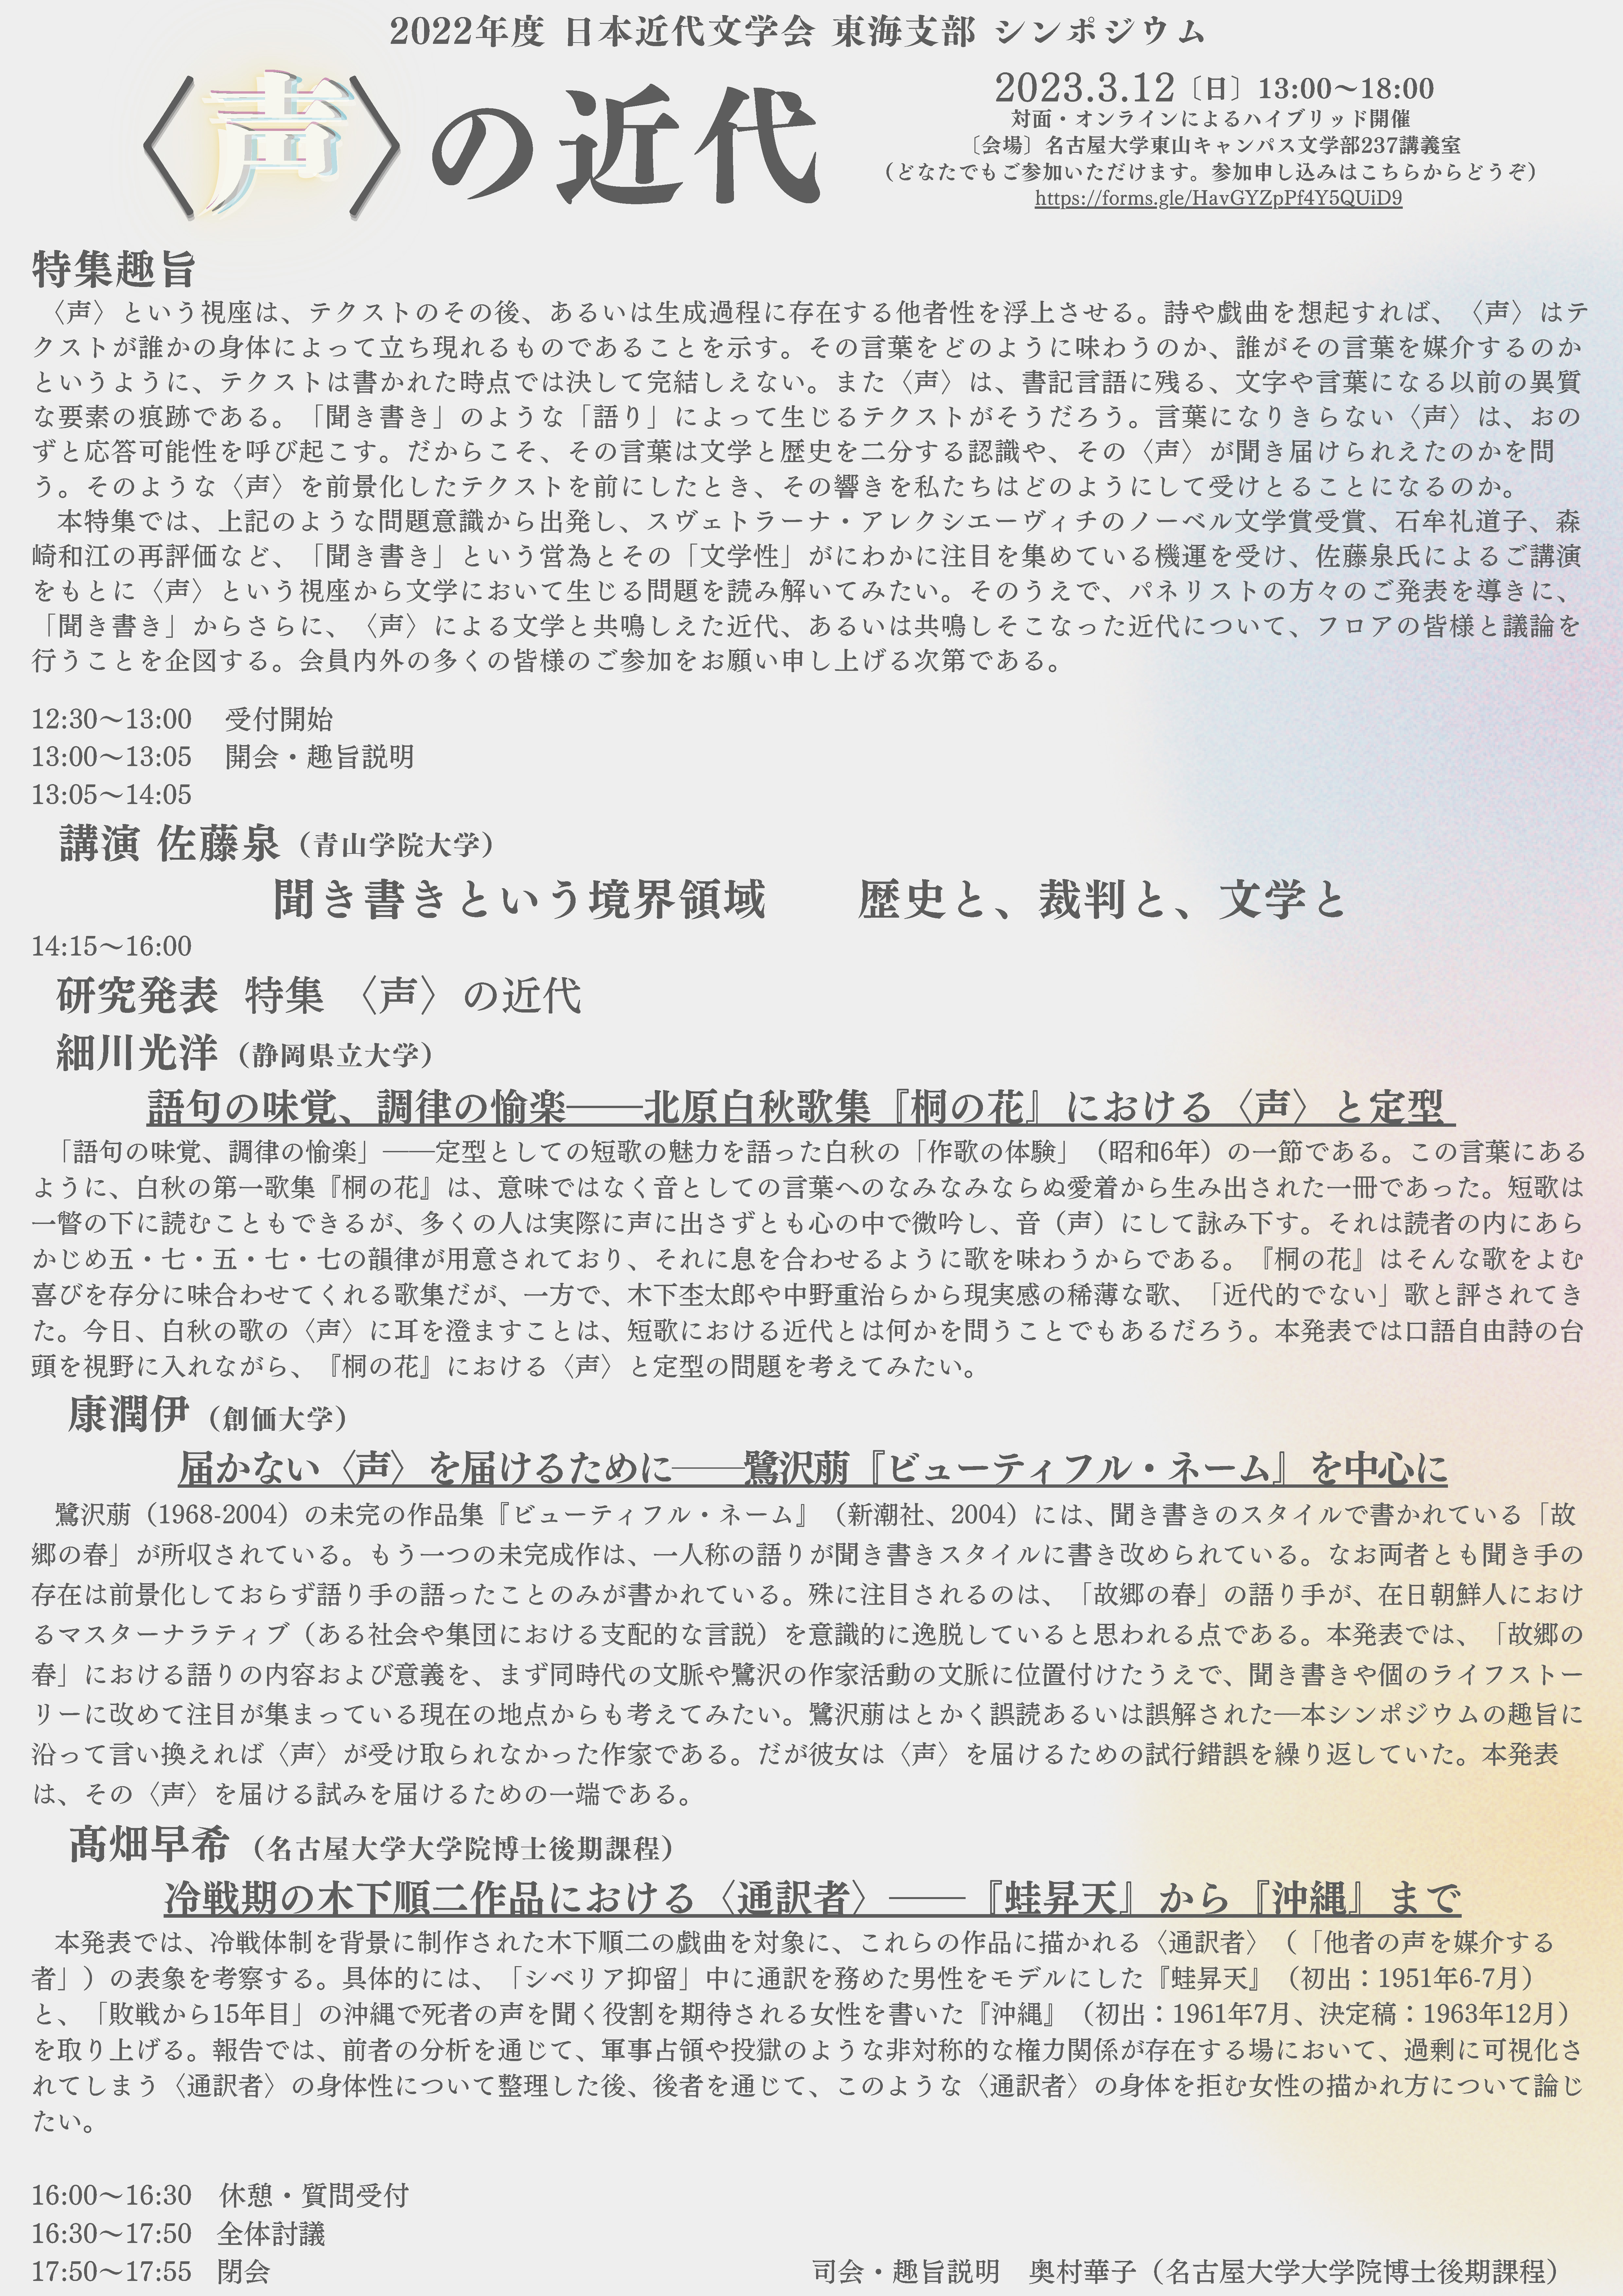 【最終稿】2022年度日本近代文学会東海支部シンポジウム_ページ_2.jpg